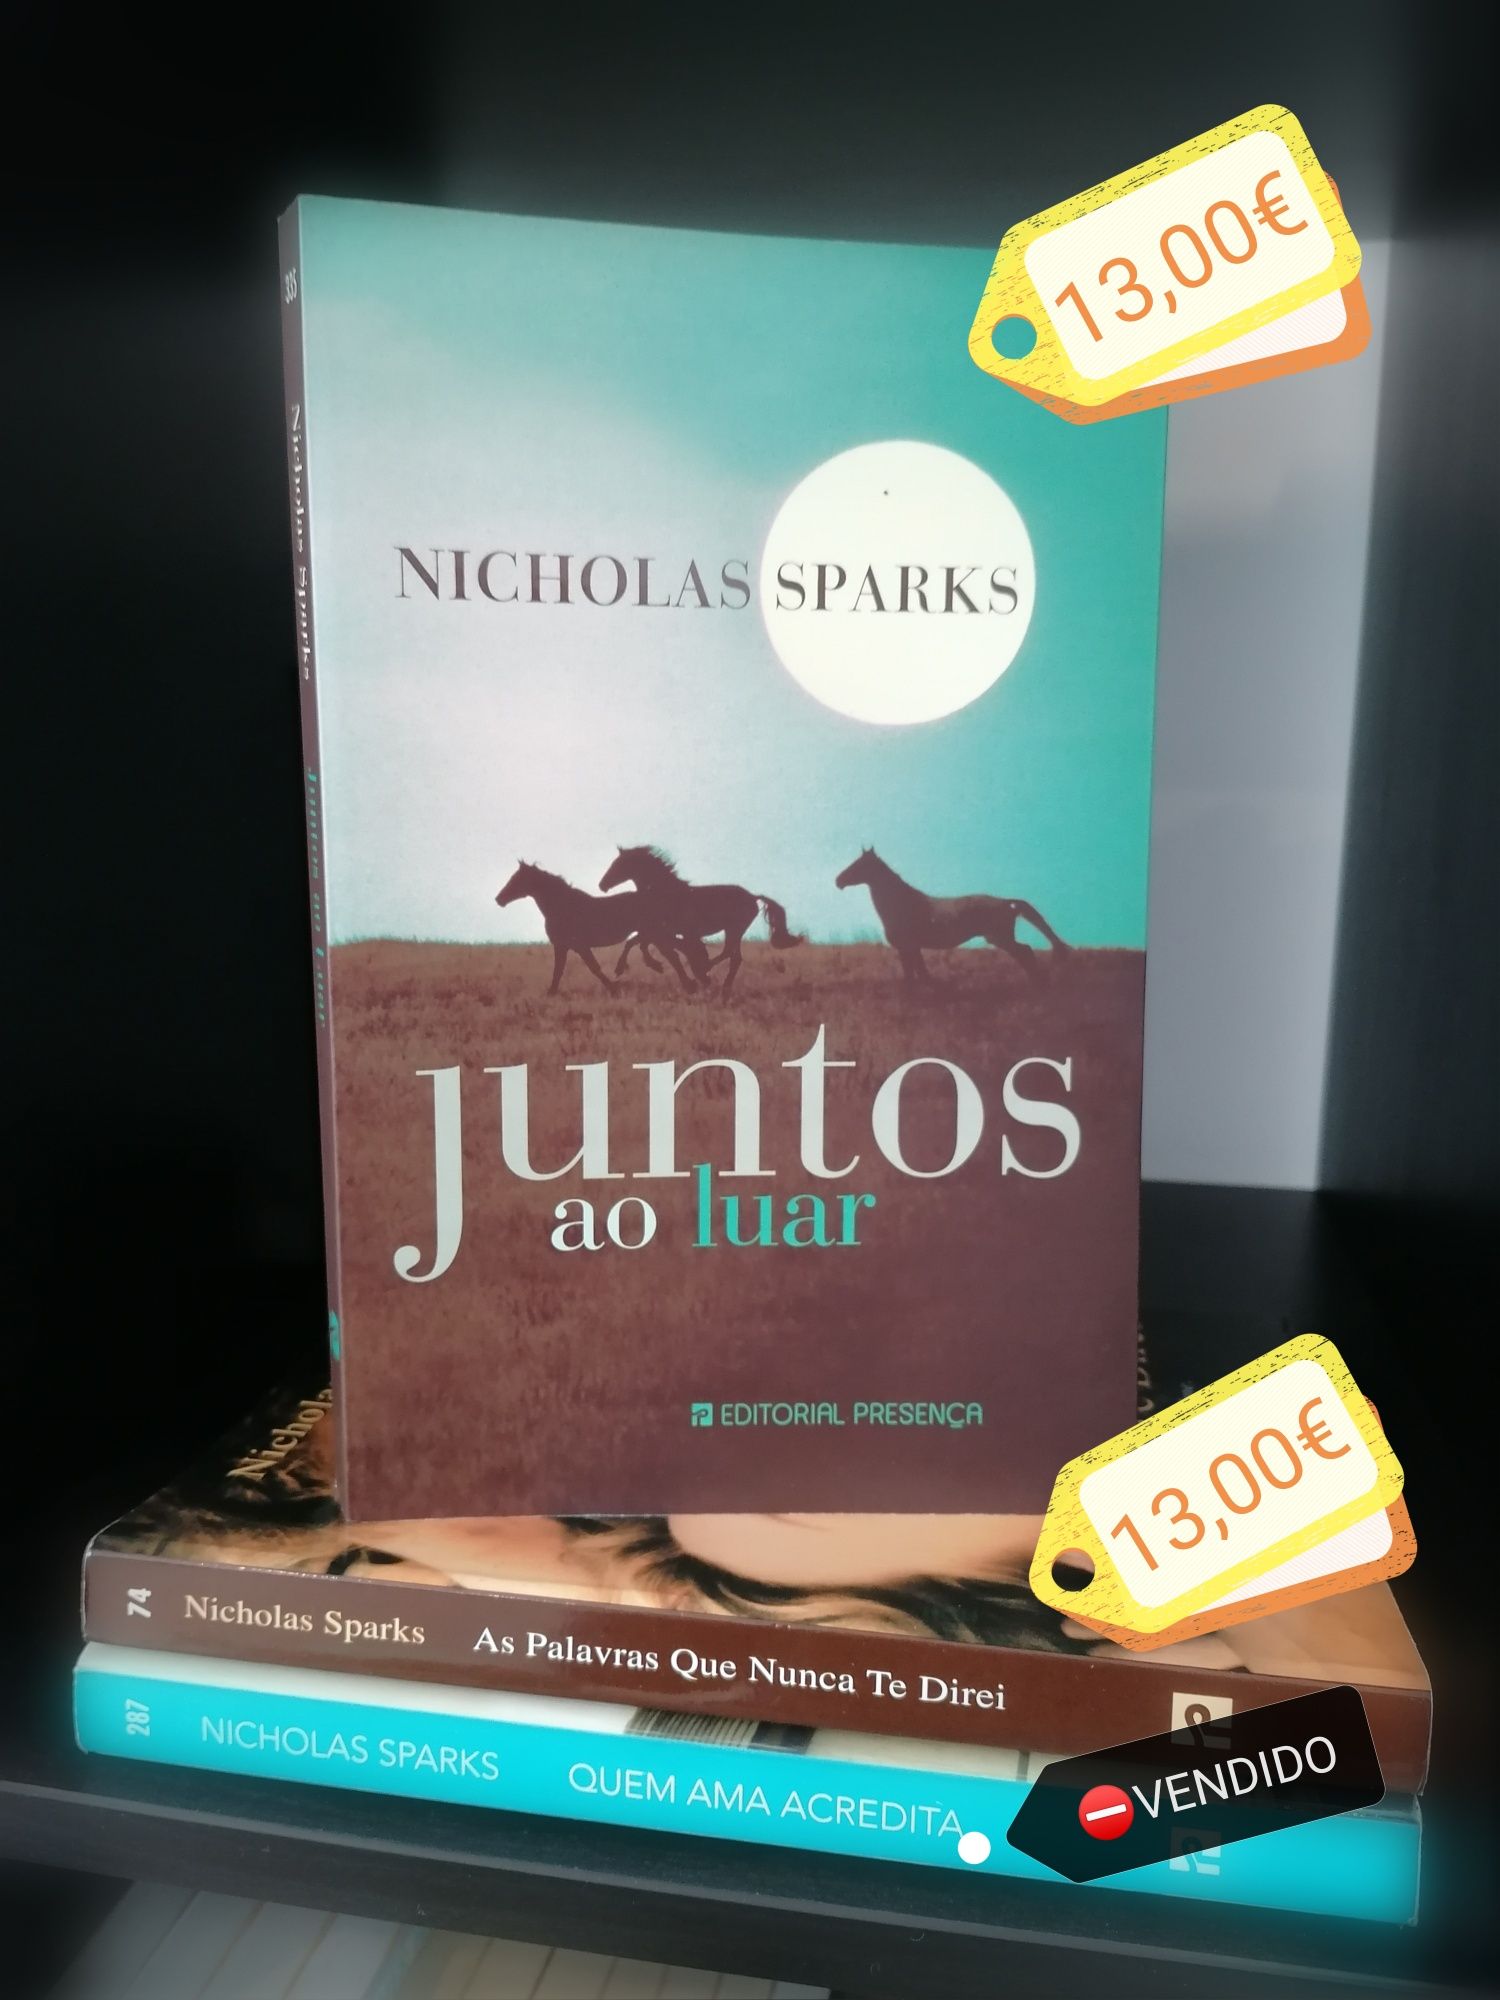 Livros Nicholas Sparks